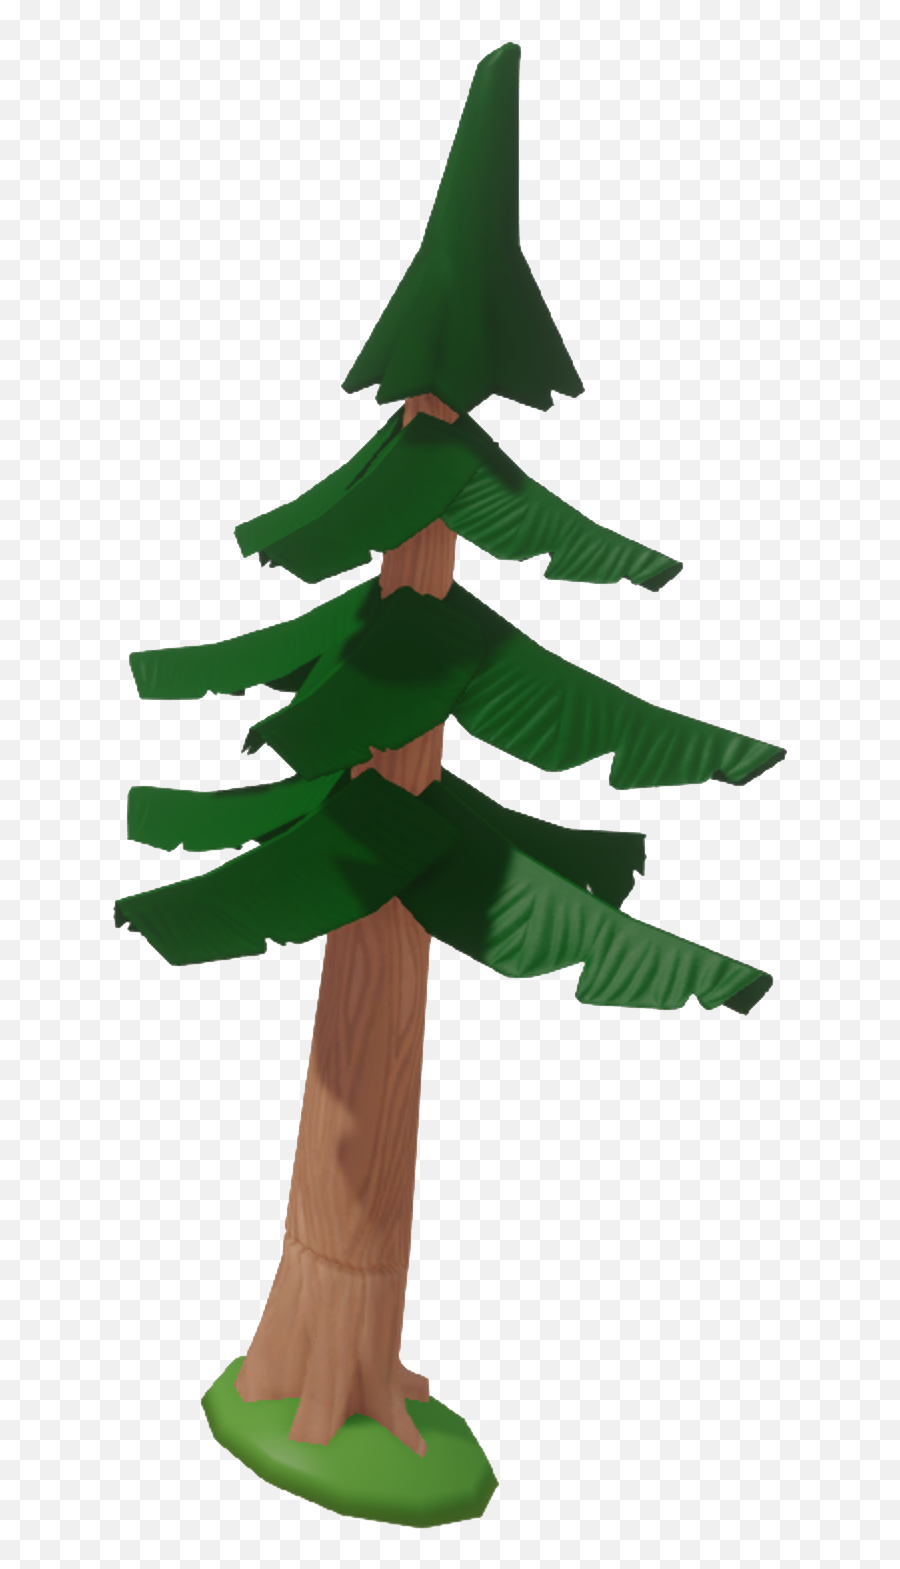 Small Disney Infinity Pine Tree Emoji,Pine Tree Transparent